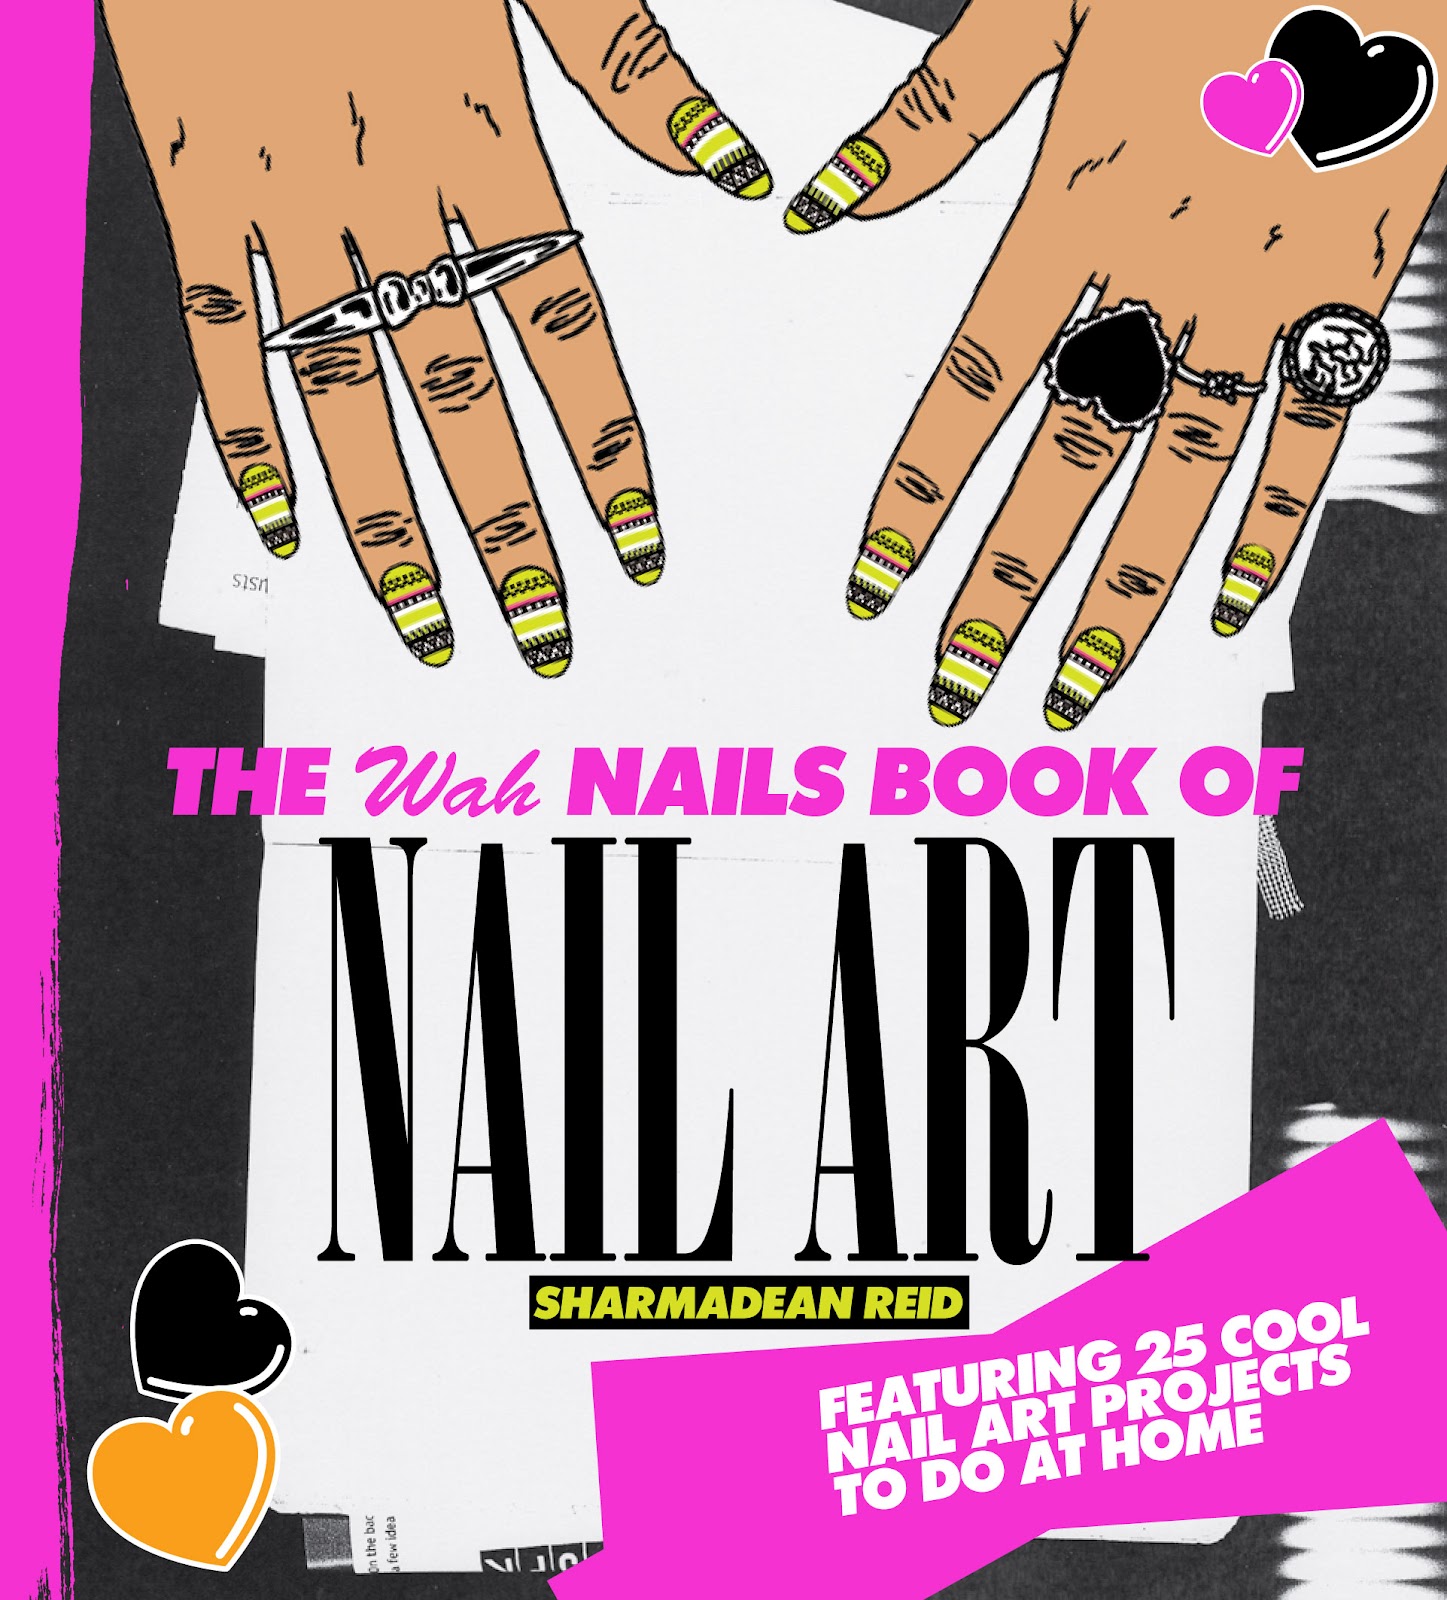 The wah nails book of nail art